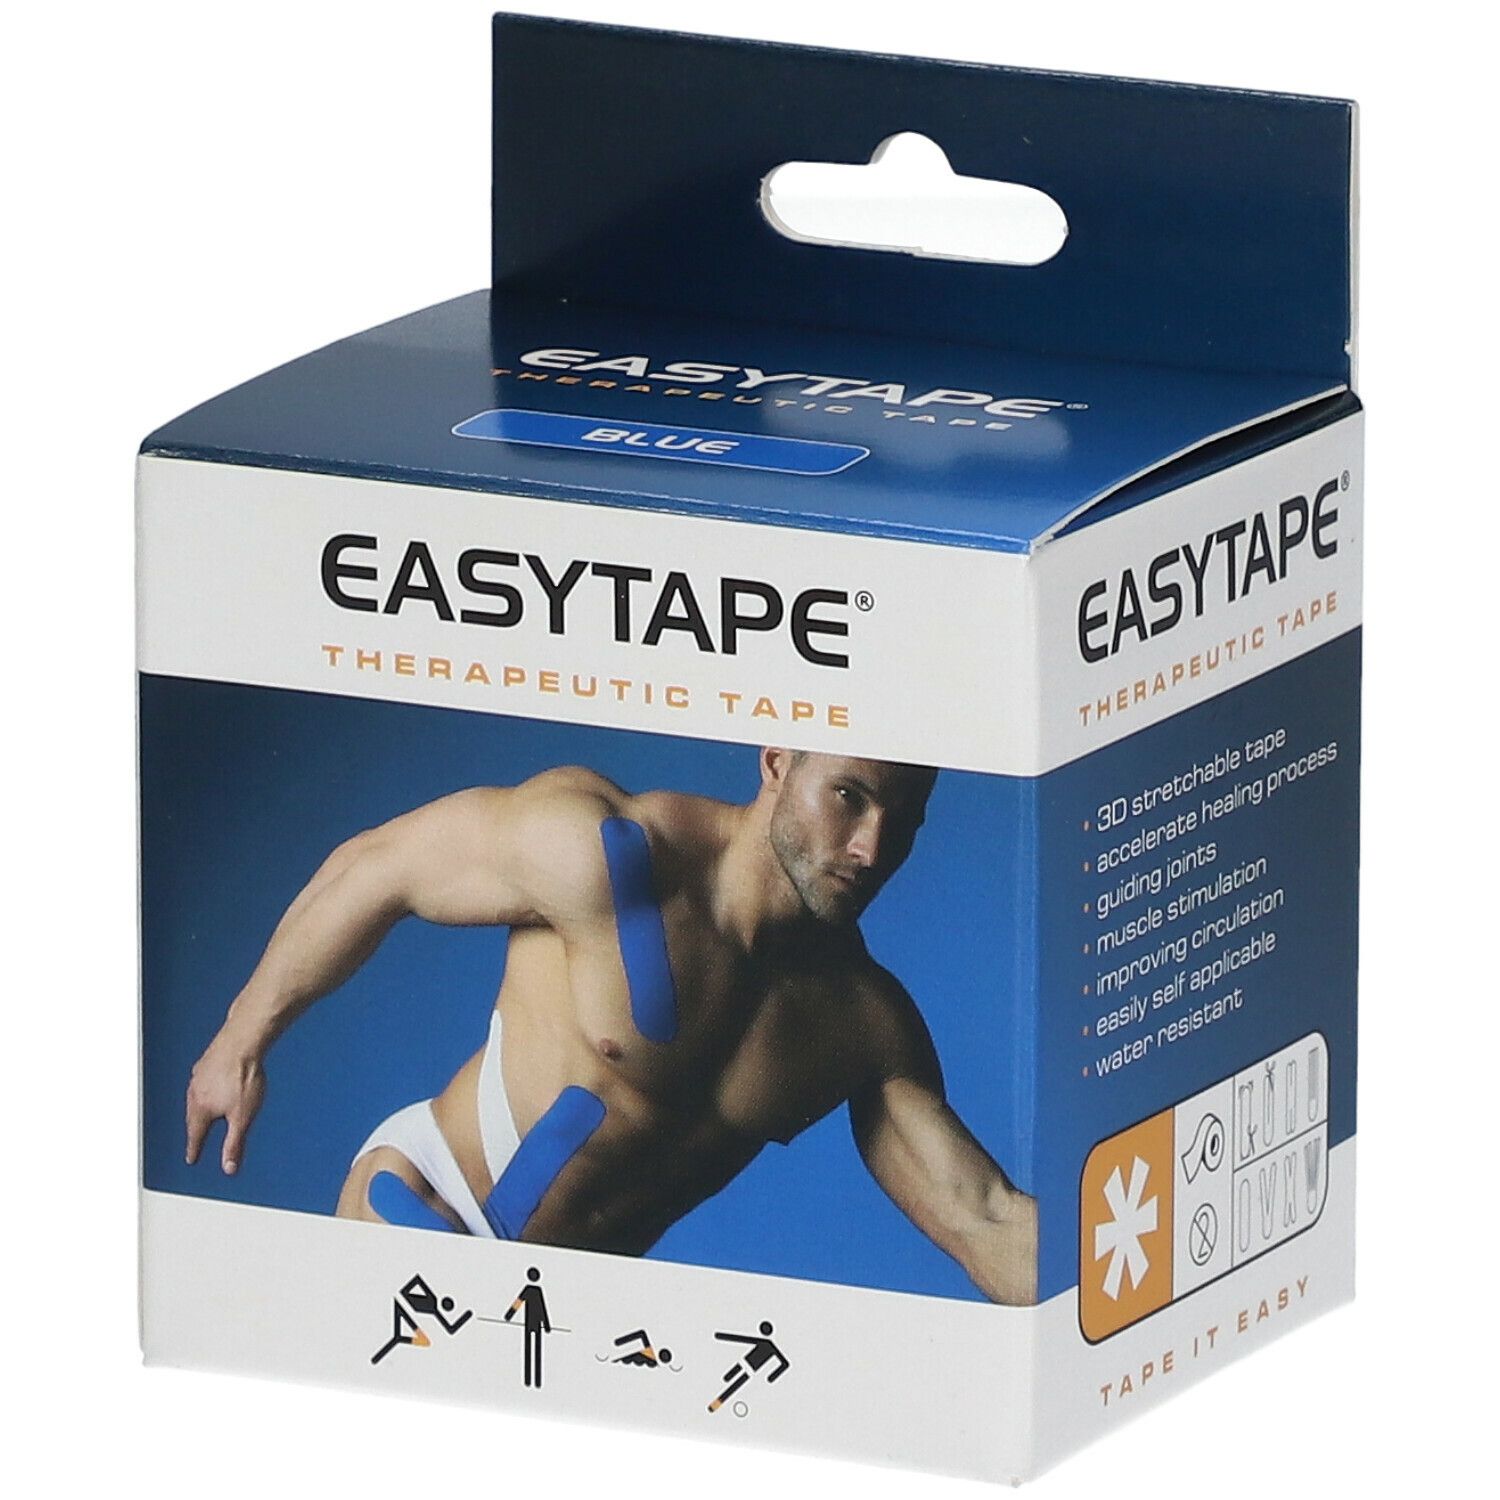 Easytape® Therapeutic Tape bleu foncé